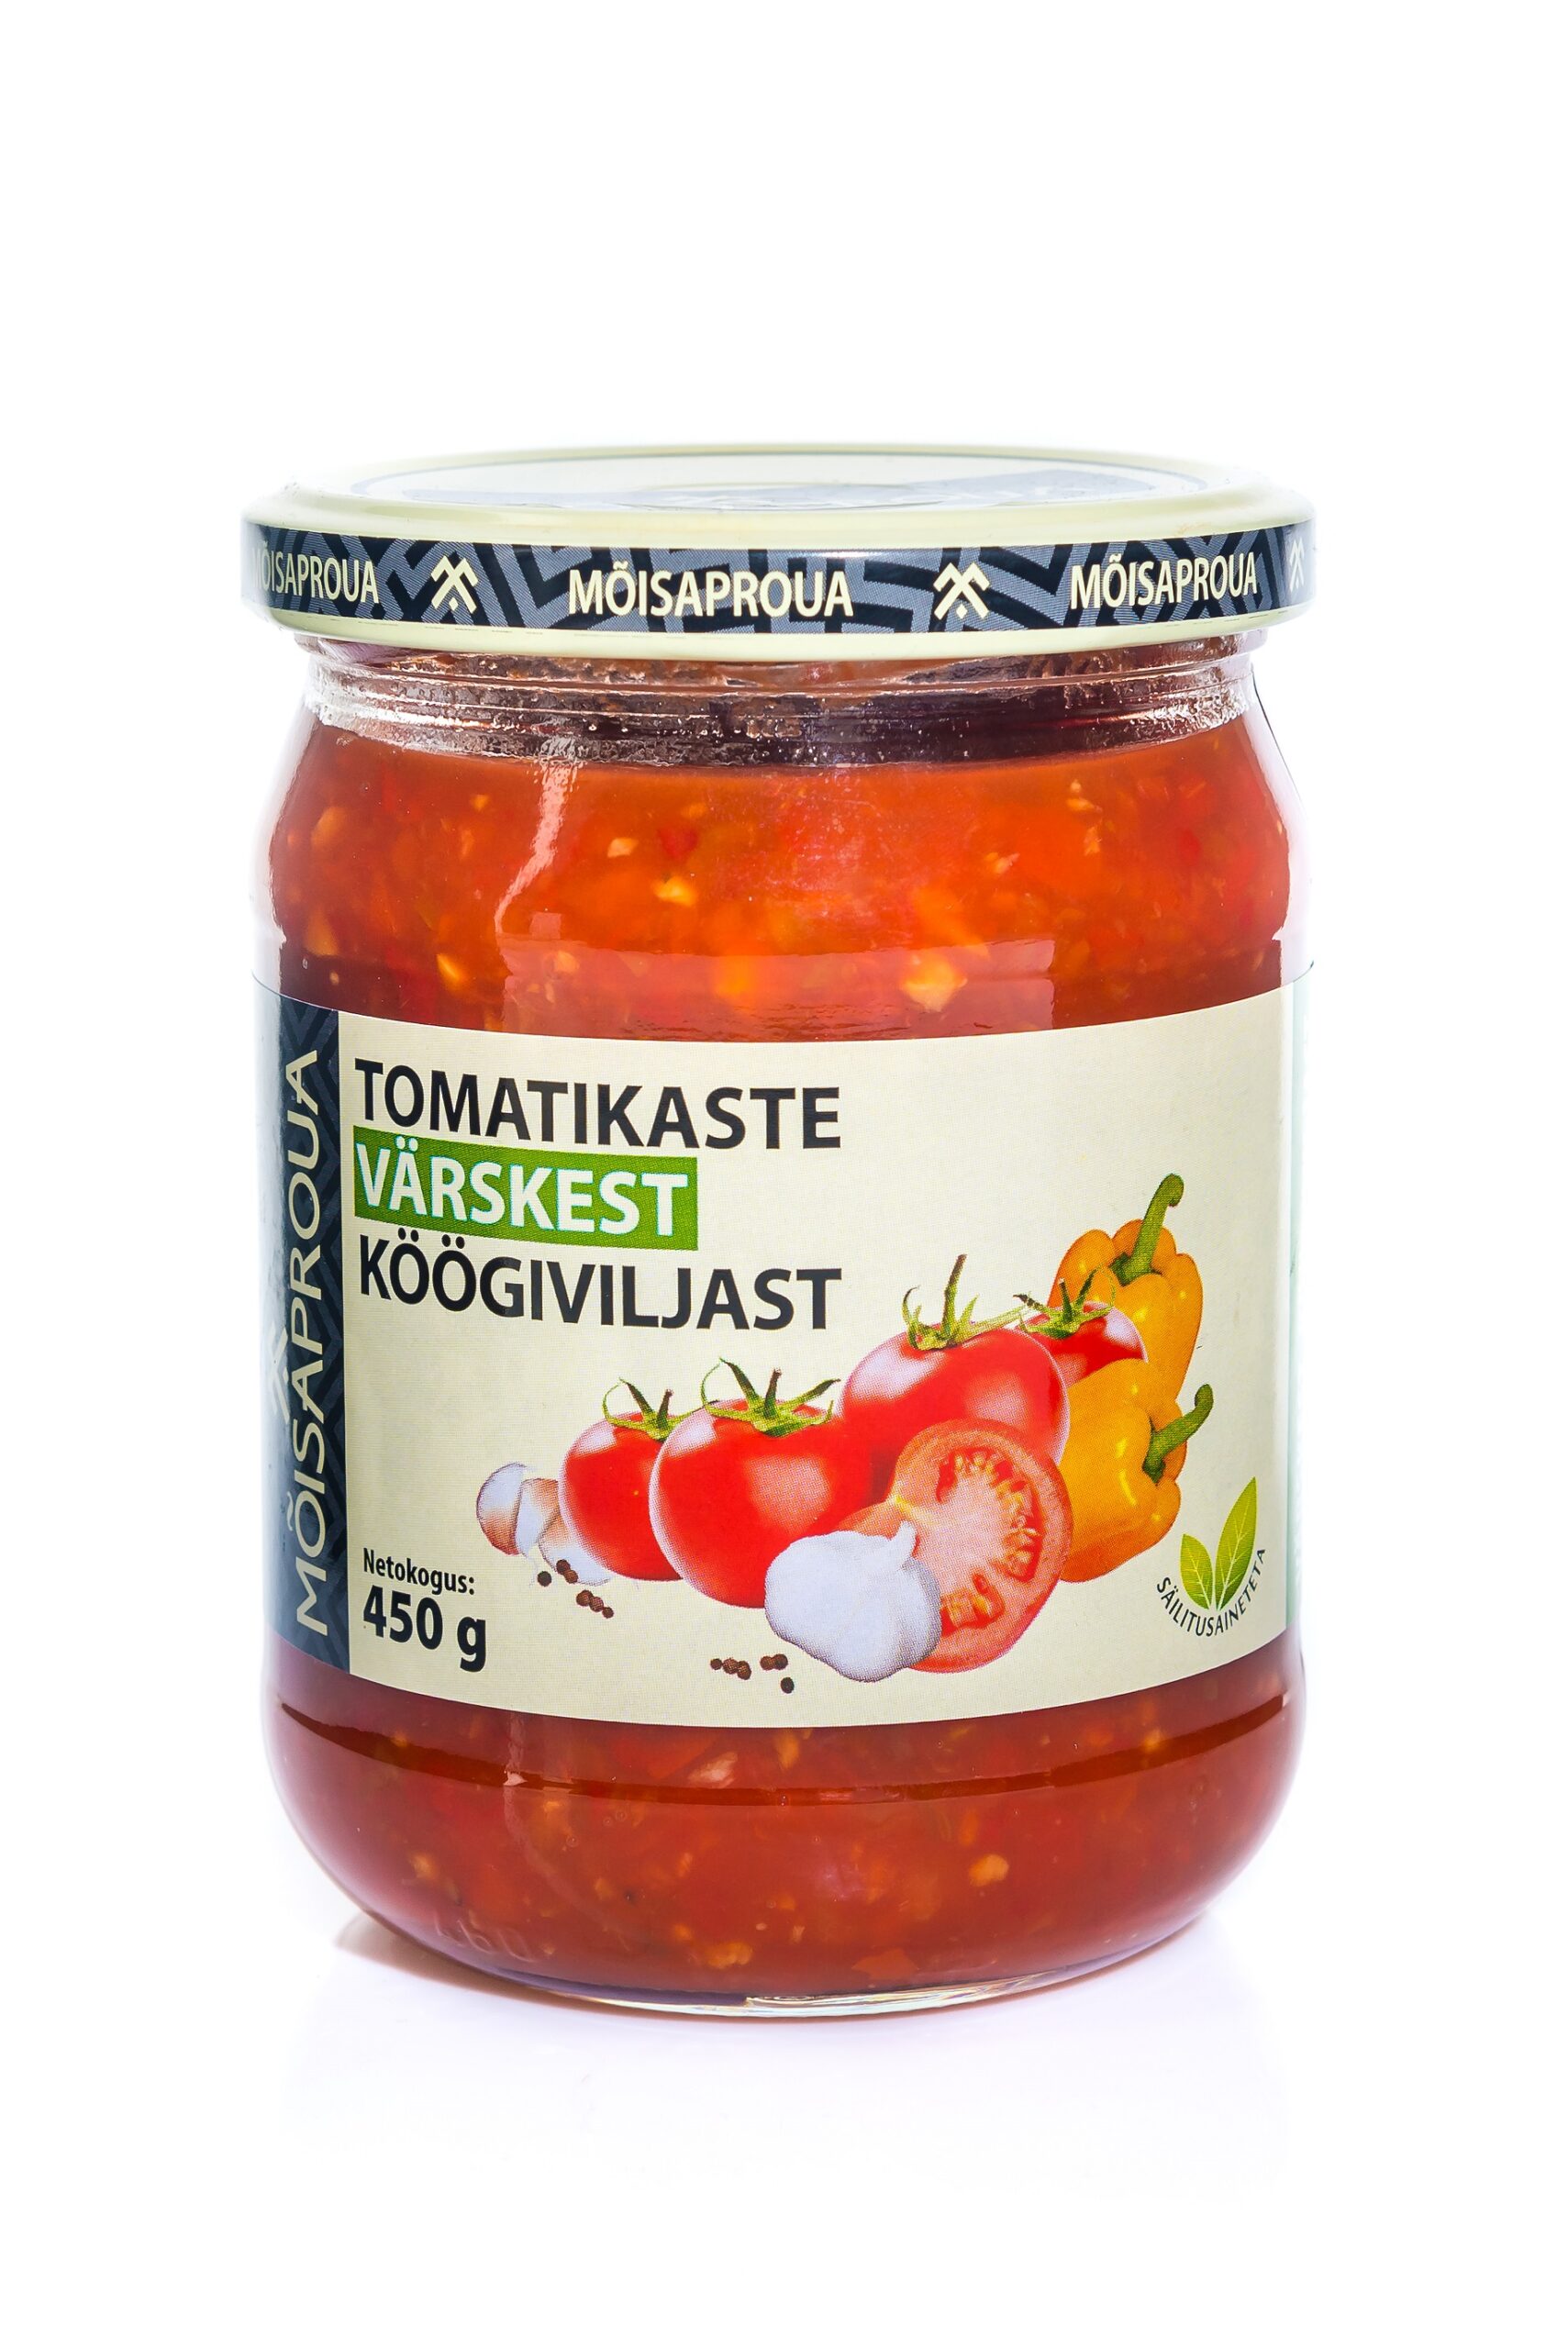 MÕISAPROUA tomatikaste värskest köögiviljast